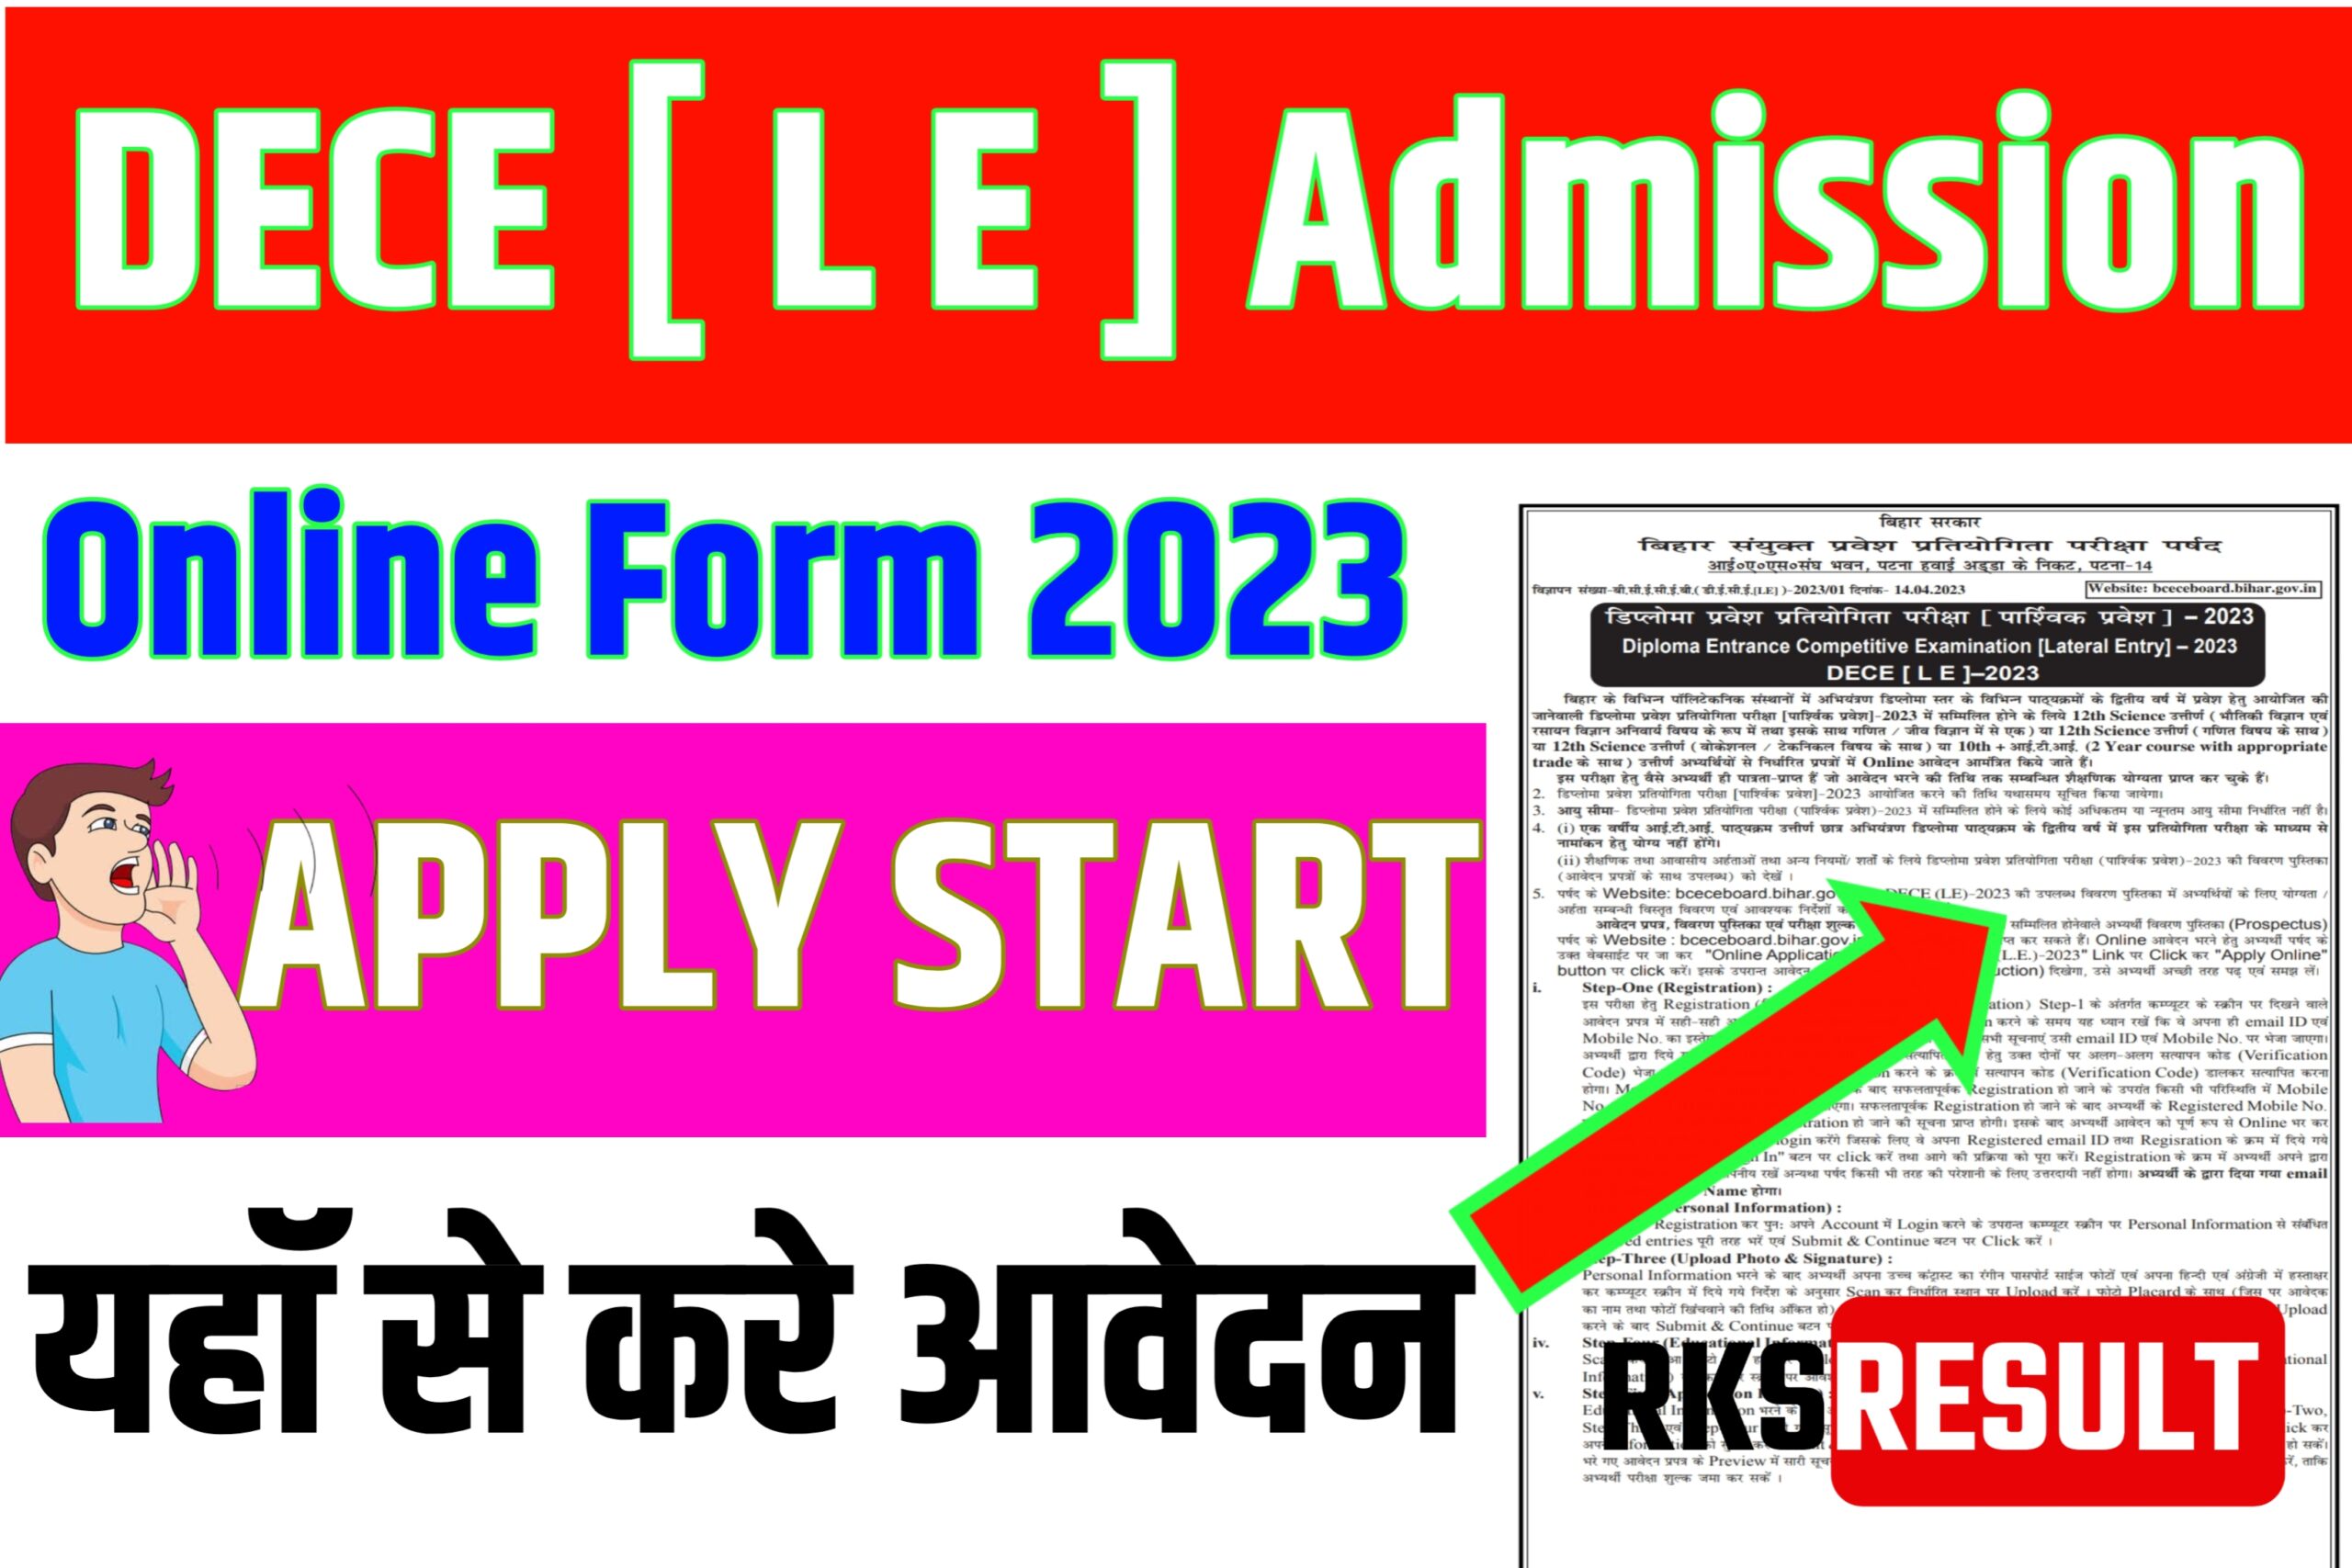 DECE [ L E ] Admission Online Form 2023